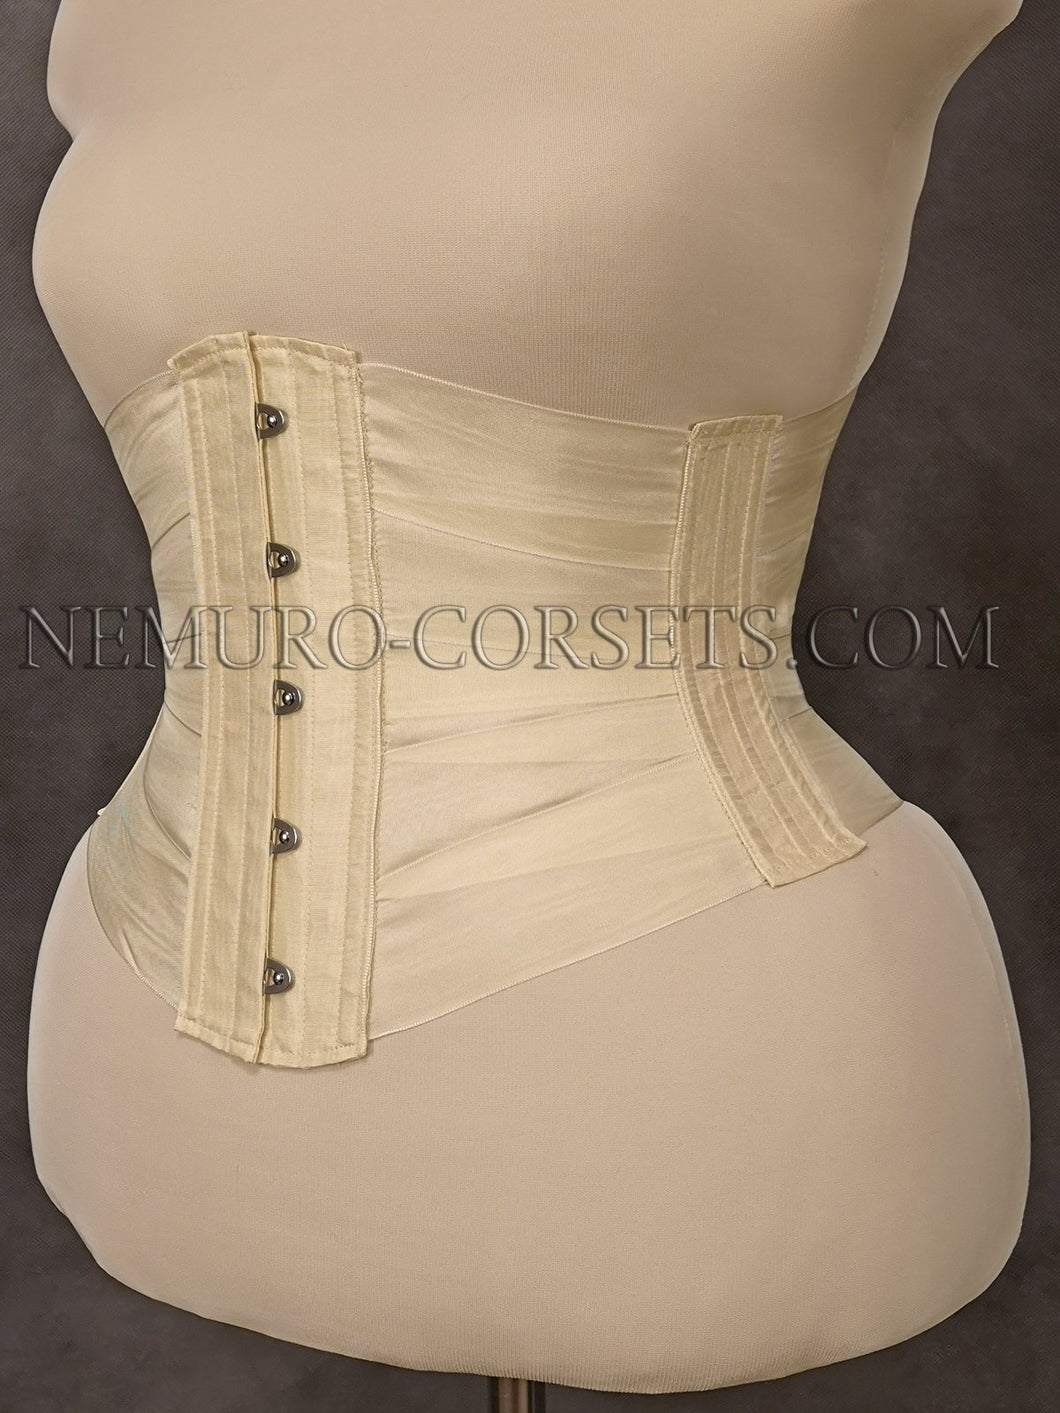 Ribbon Edwardian underbust corset